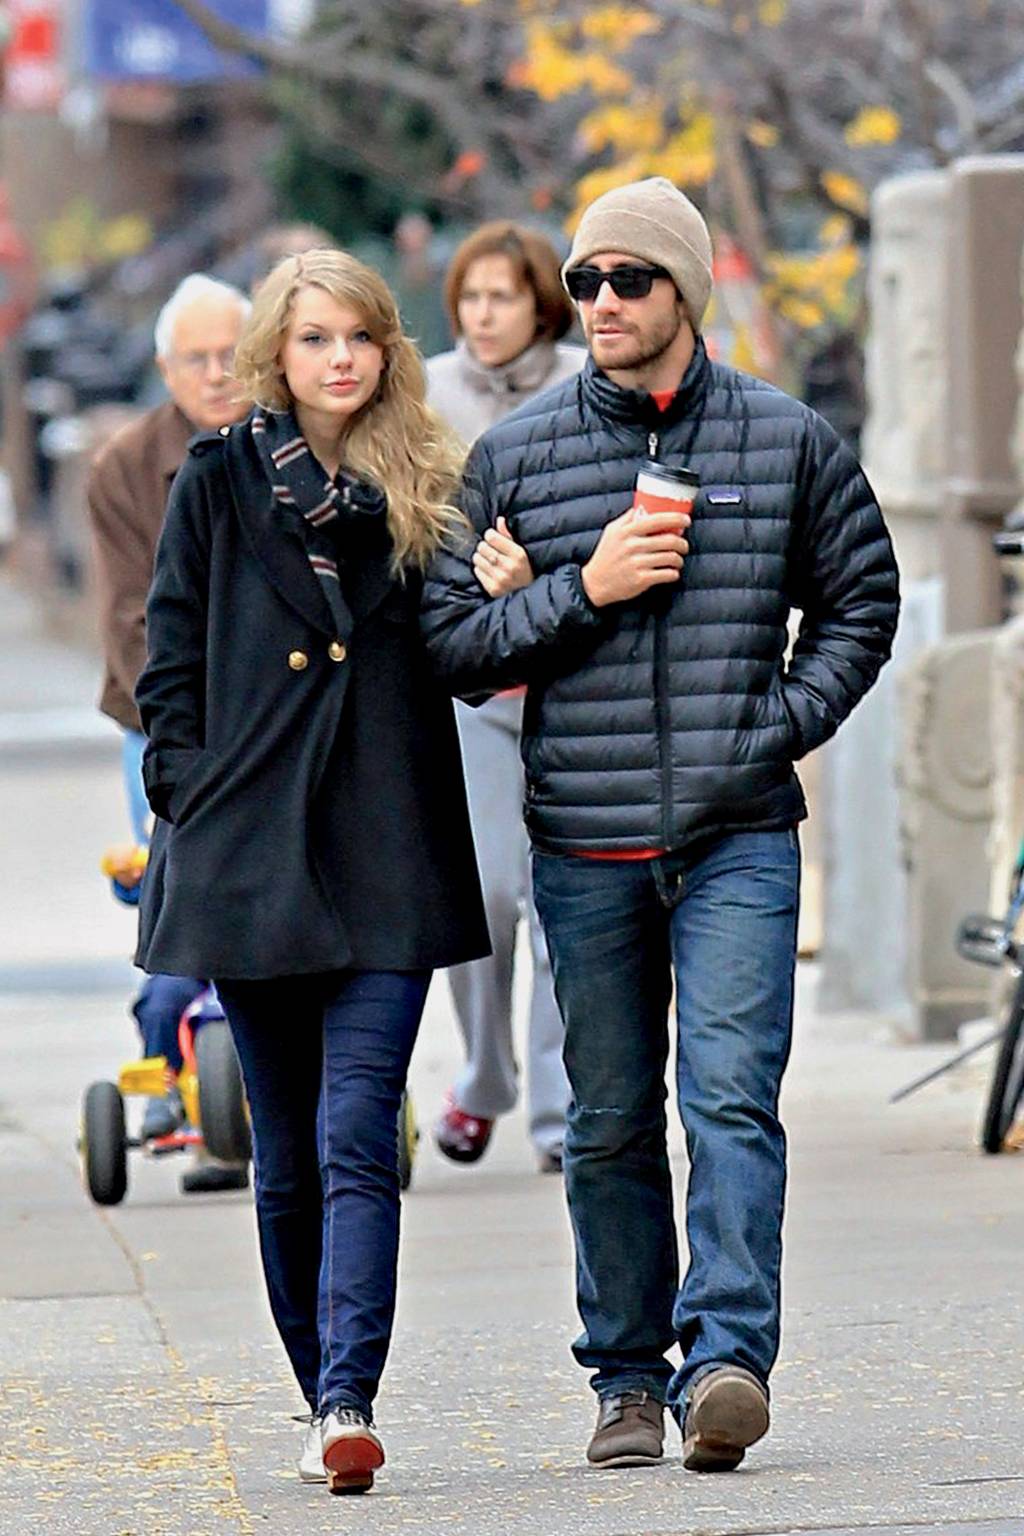 DESCRÉDITO CONTUMAZ - Na canção All Too Well, a cantora Taylor Swift conta que o ex-namorado, o ator Jake Gyllenhaall, tentava convencê-la de que situações reais não  haviam realmente acontecido -